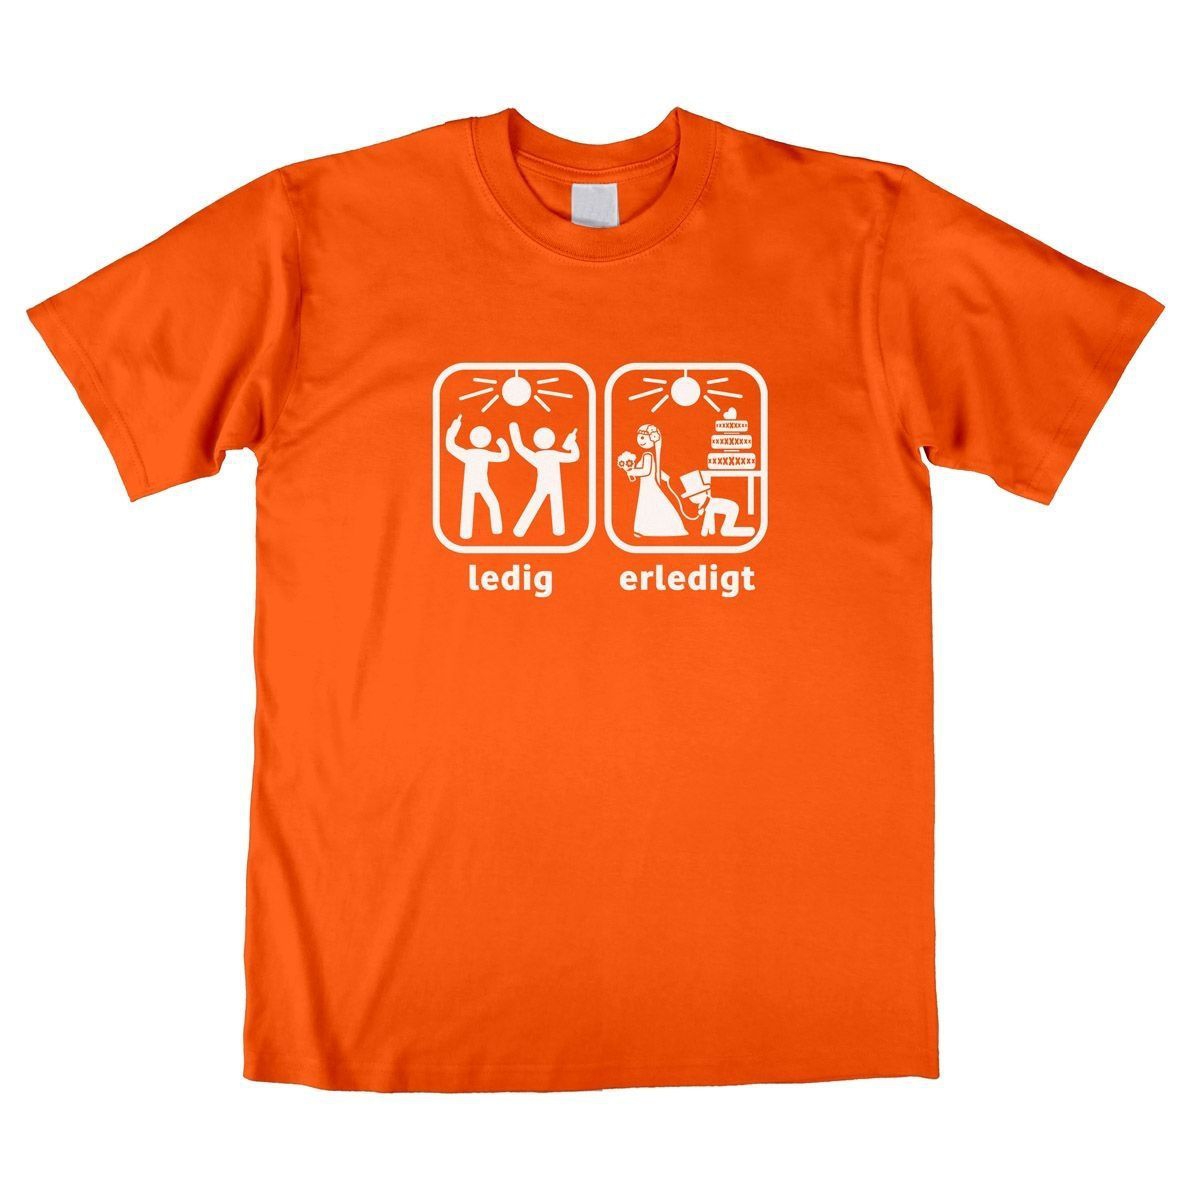 Erledigt Unisex T-Shirt orange Medium